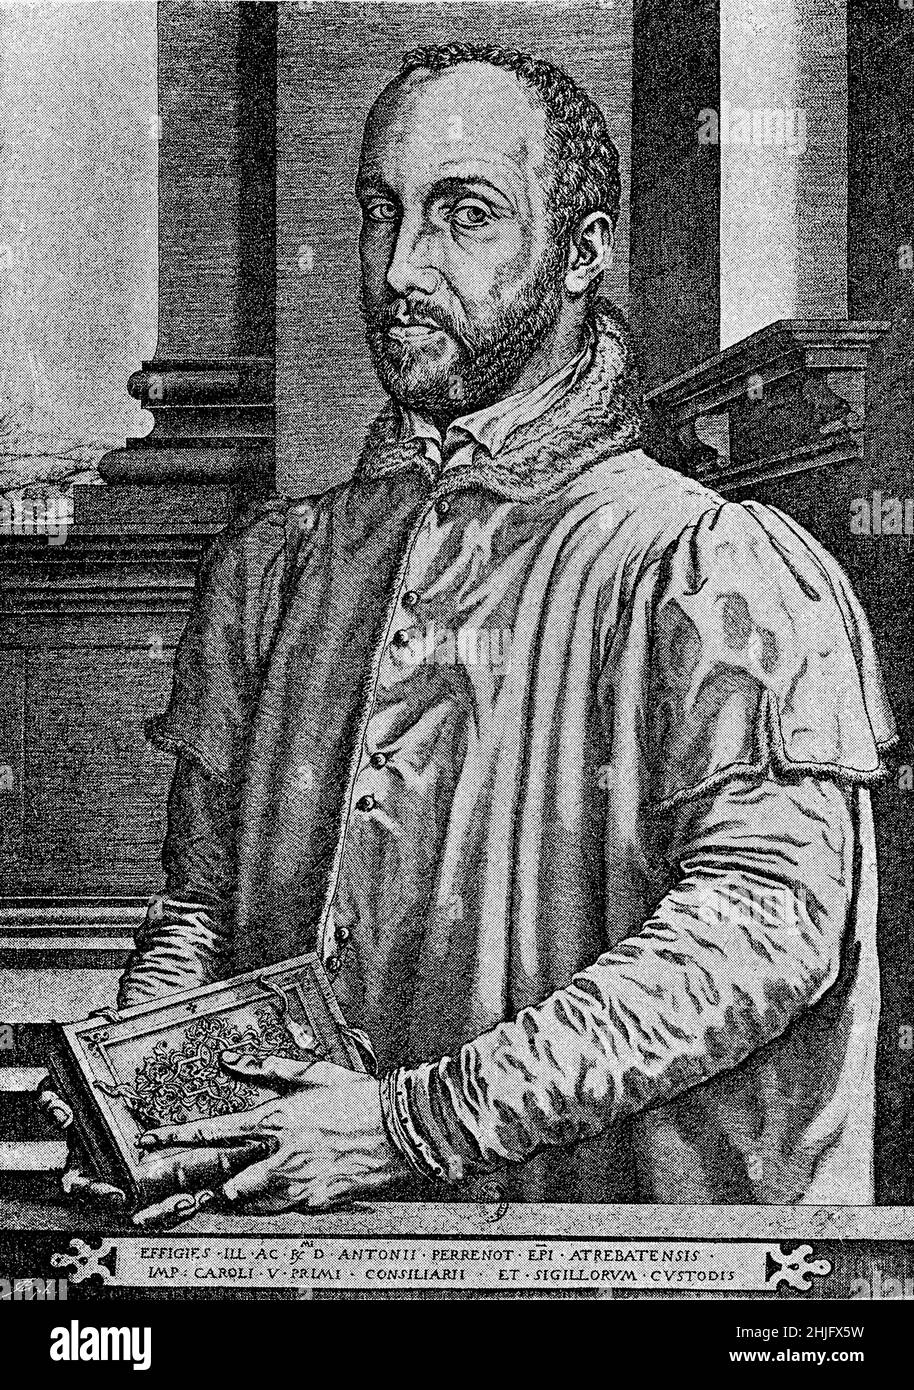 Ritratto di Antoine Perrenot de Granvelle (1517 - 1586) statista, cardinale, influente politici europei e grande collezionista d'arte Foto Stock